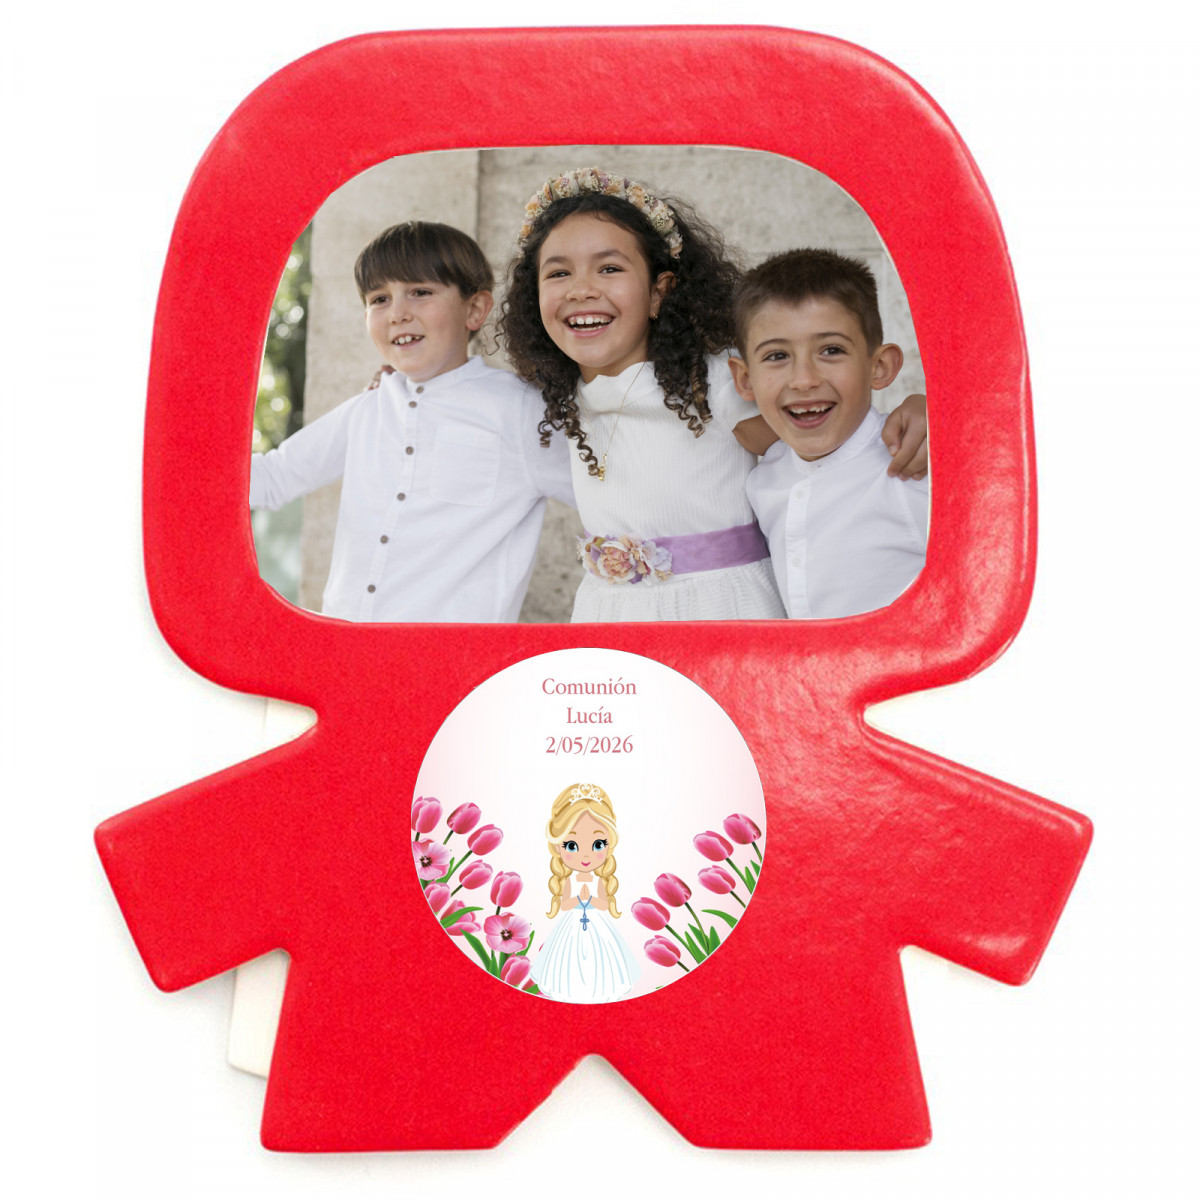 Marco fotos imán en forma de silueta roja y adhesivo de comunión para niña